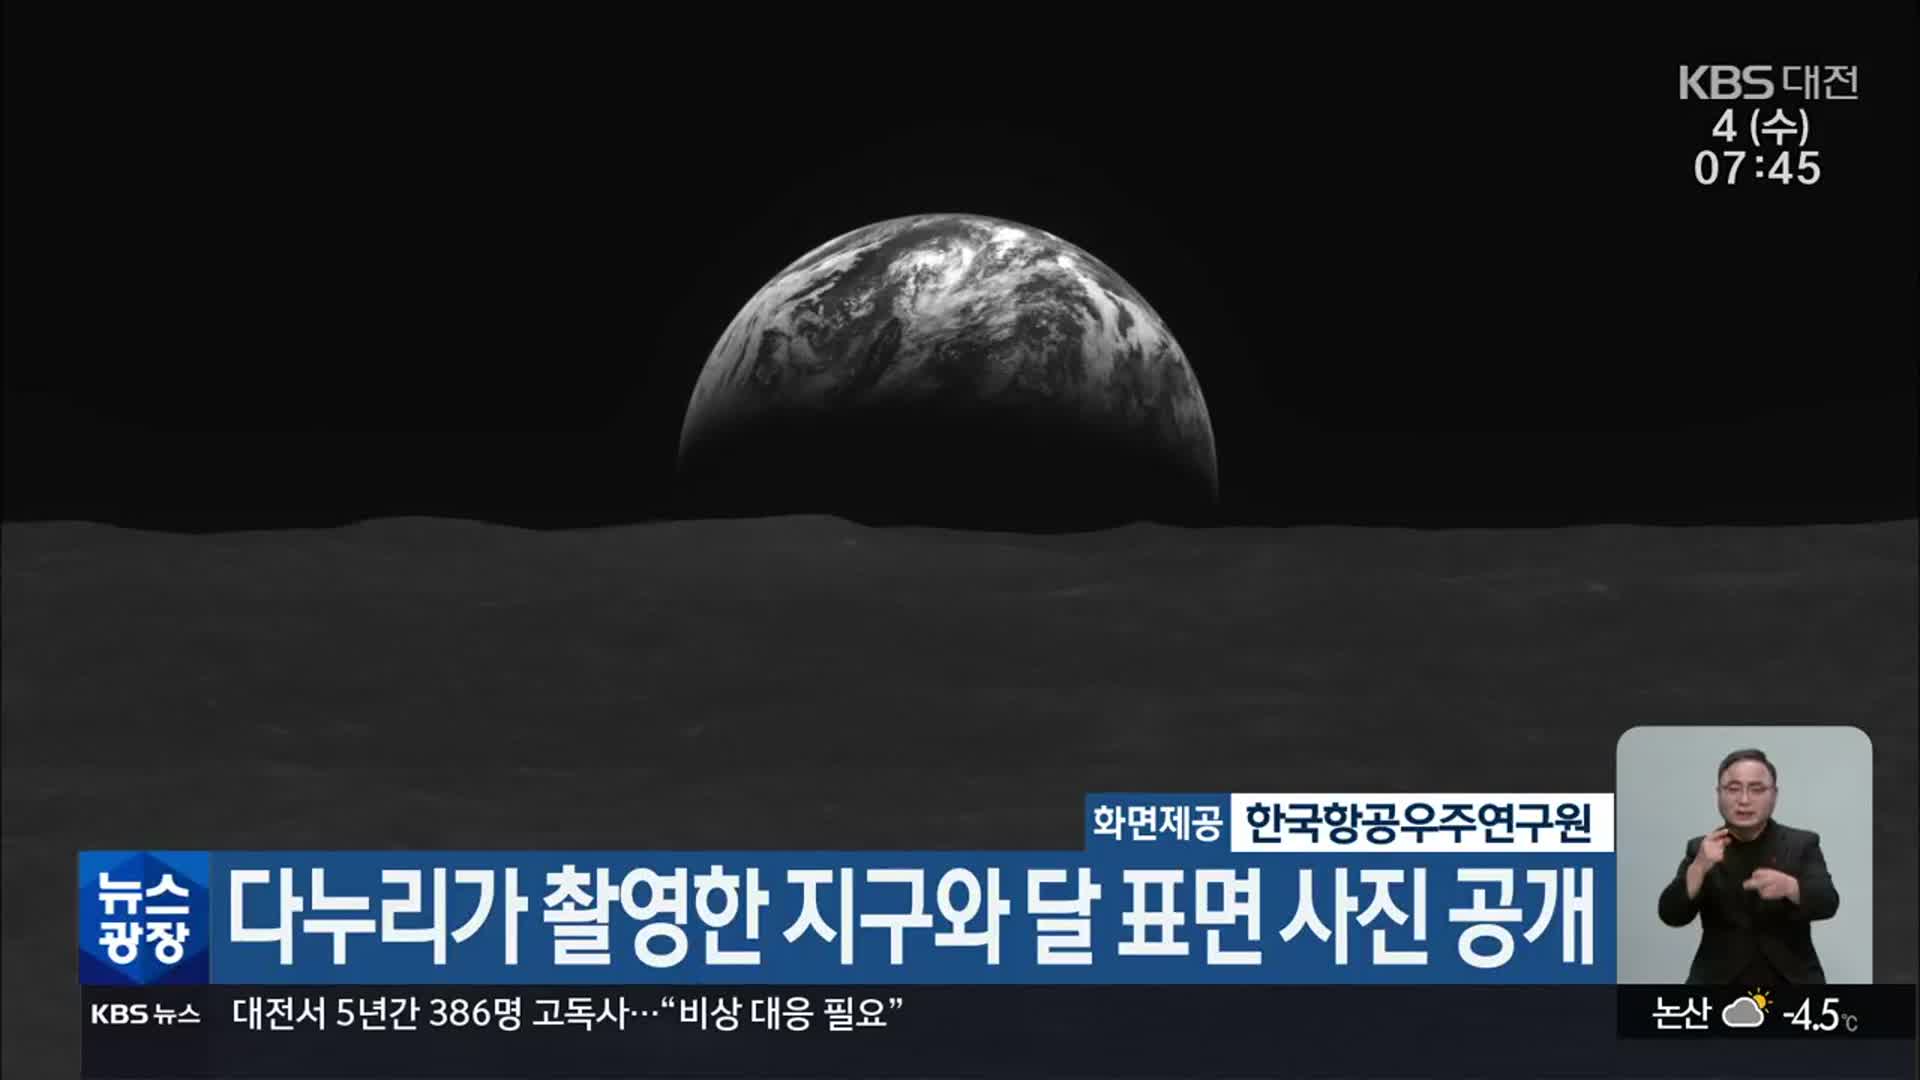 다누리가 촬영한 지구와 달 표면 사진 공개